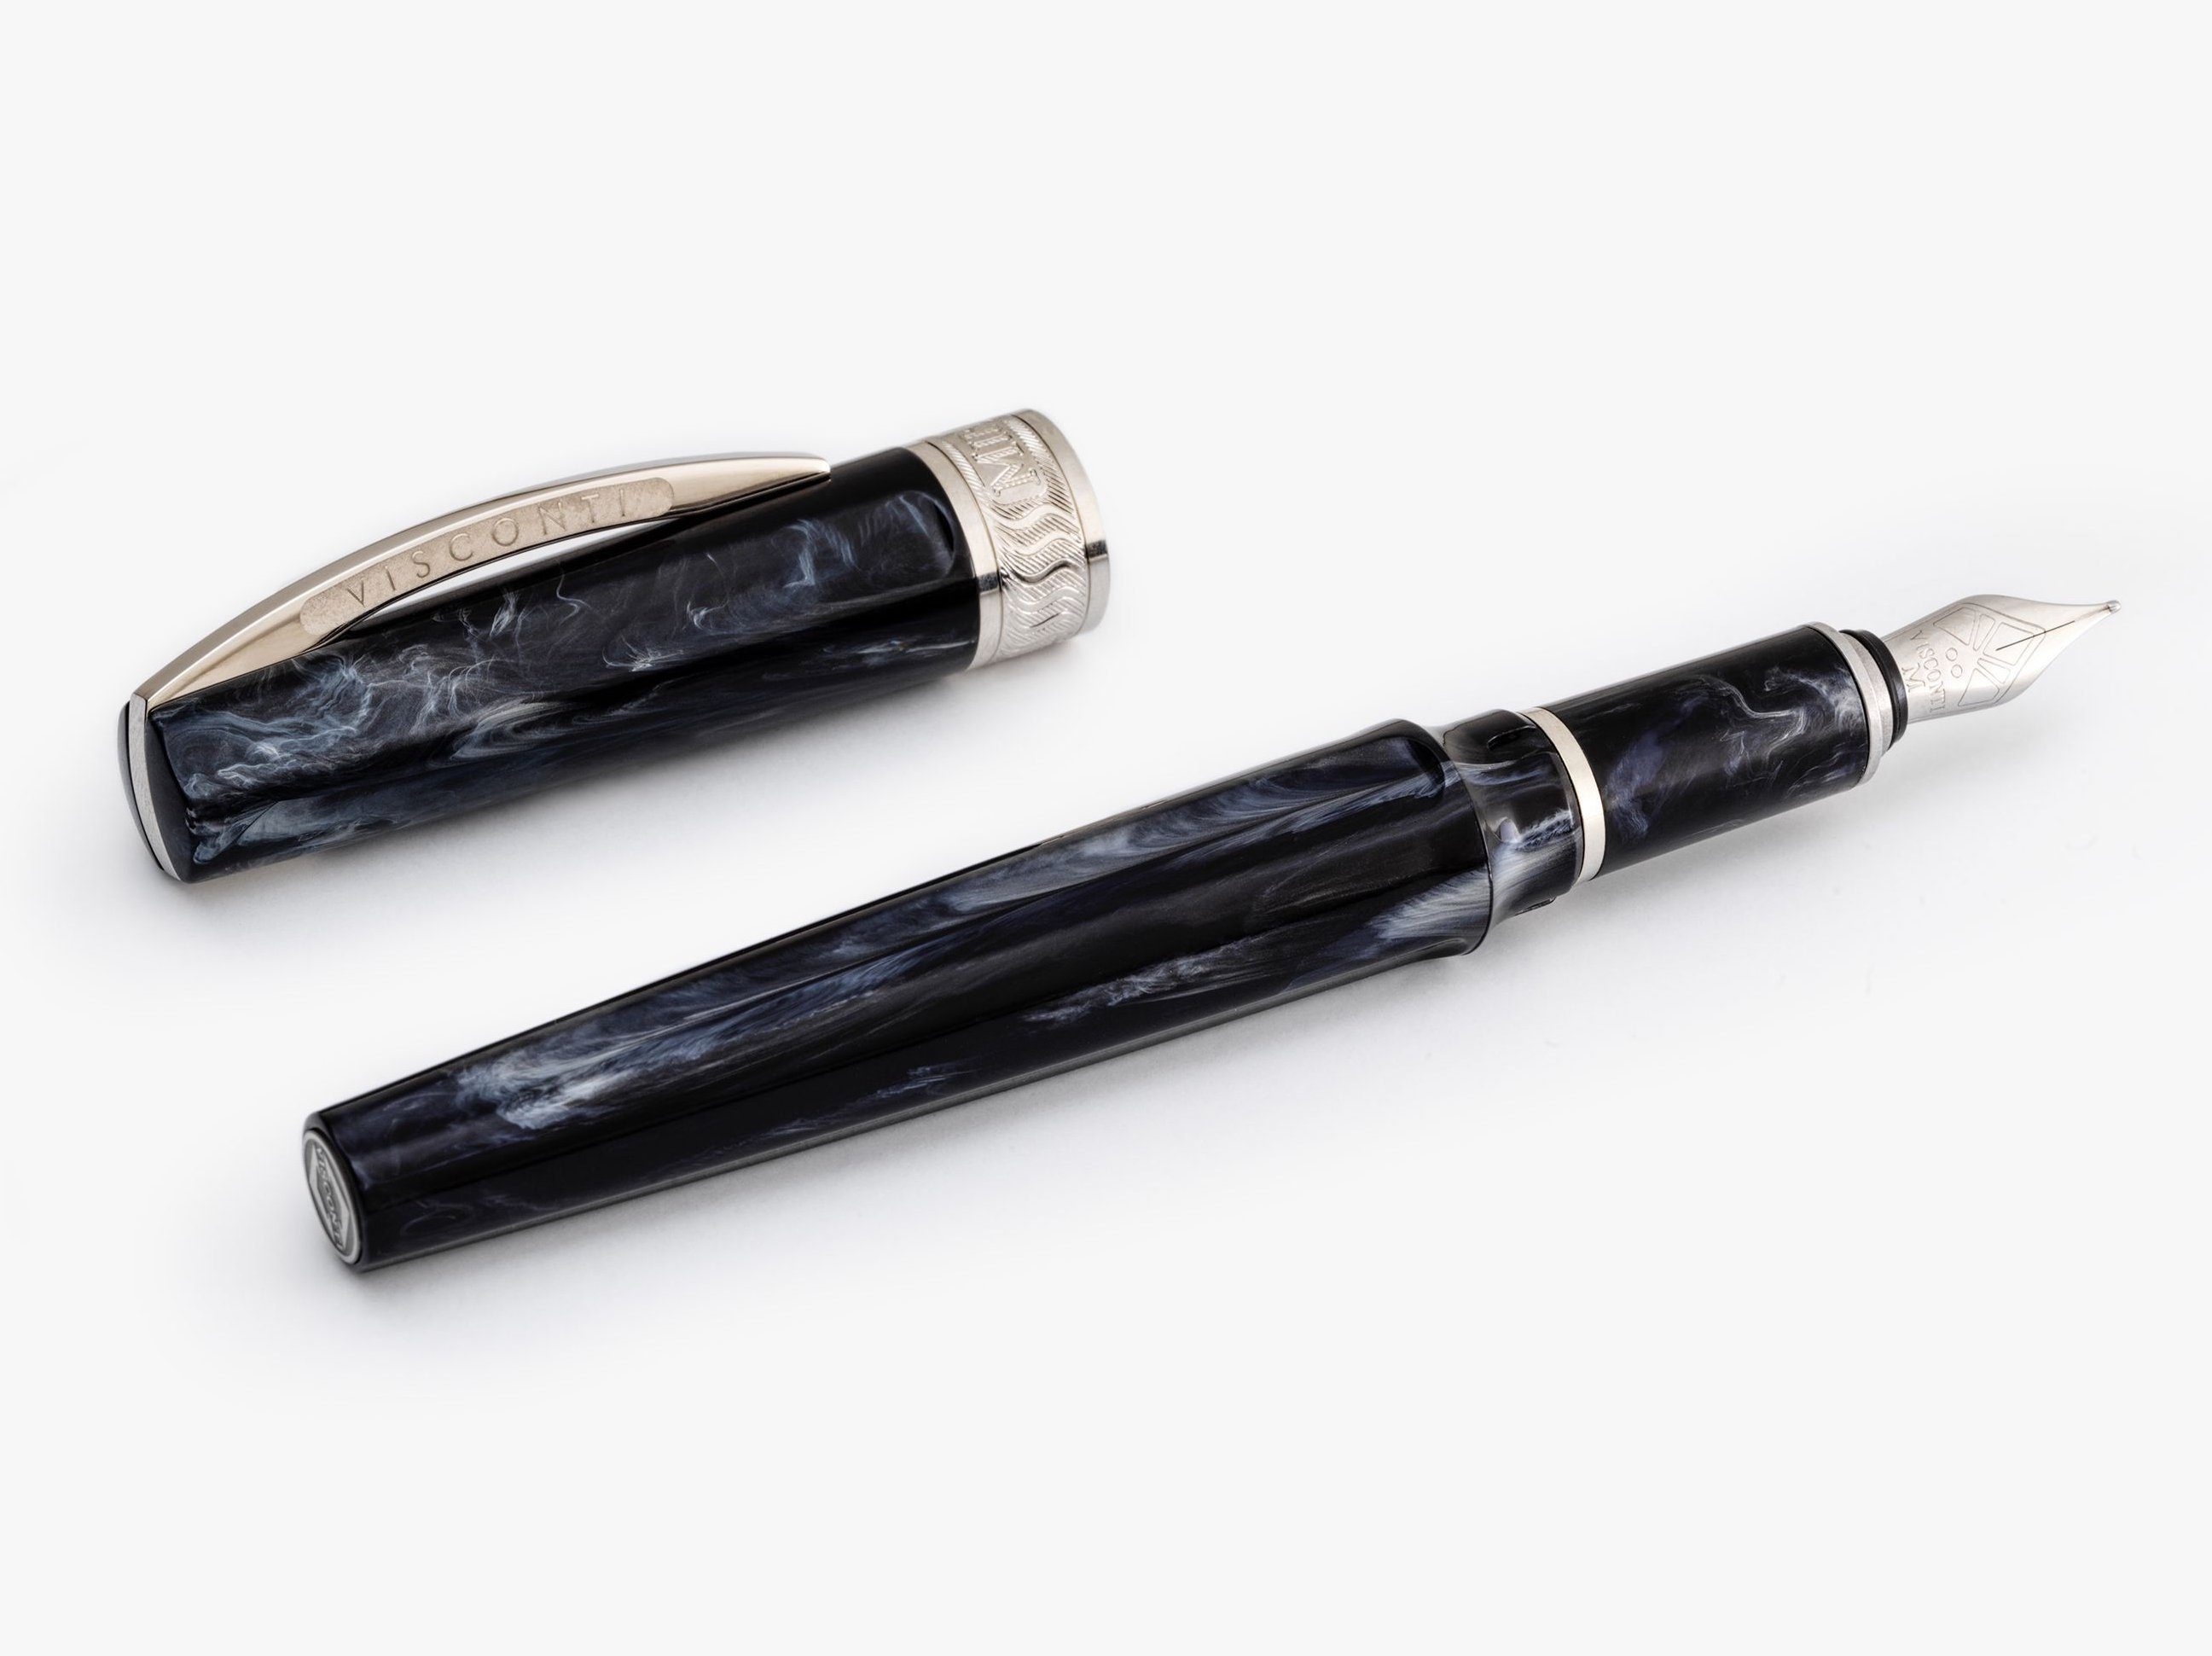 Visconti Füllfederhalter Füllfederhalter Visconti Mirage Black Fountain Pen verschiedene Feders, (kein Set) Schwarz EF